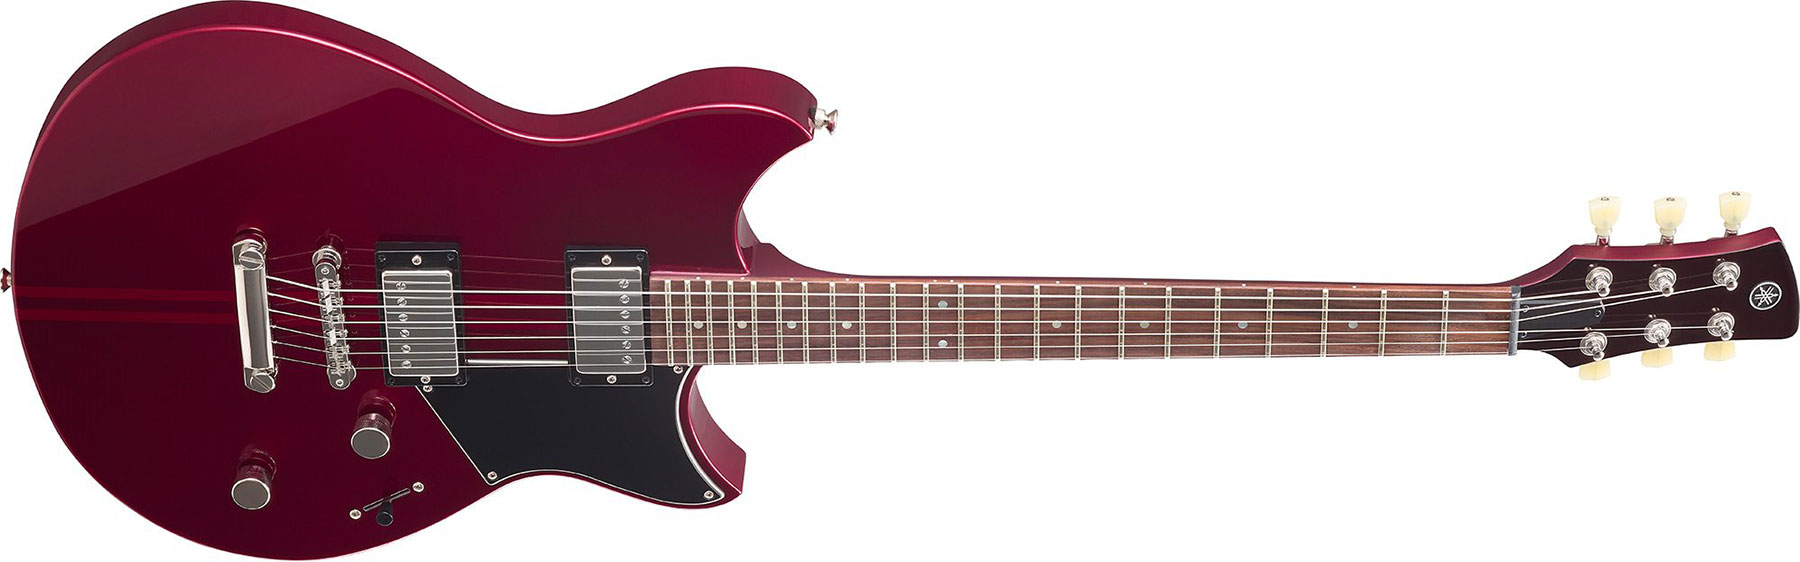 Yamaha Rse20 Revstar Element Hh Ht Rw - Red Copper - Guitarra eléctrica de doble corte - Variation 1